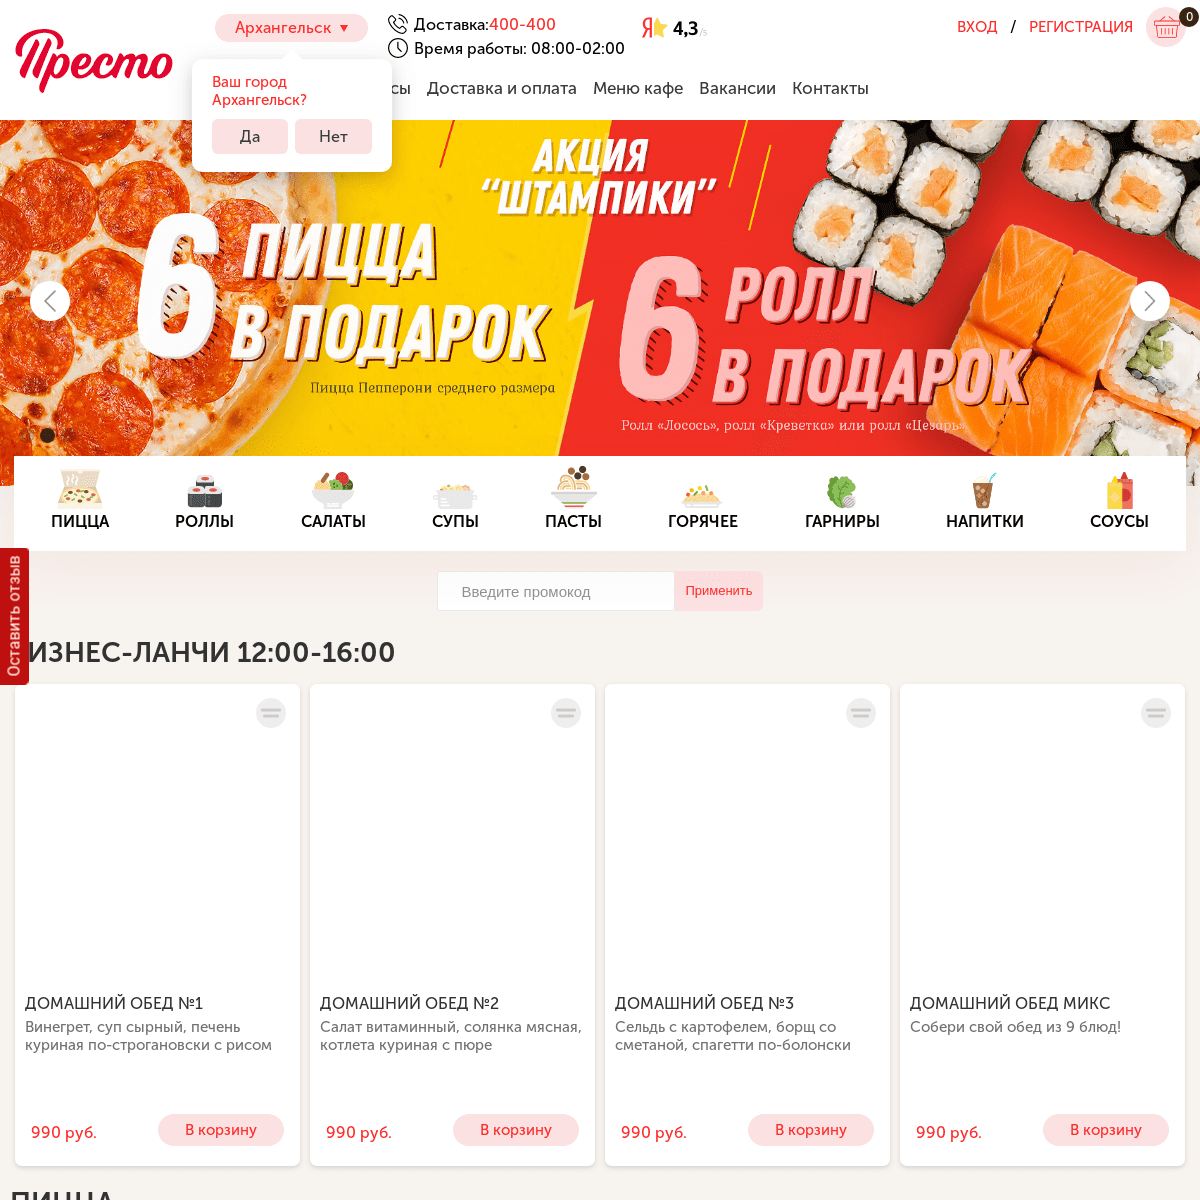 A complete backup of pizzapresto.ru